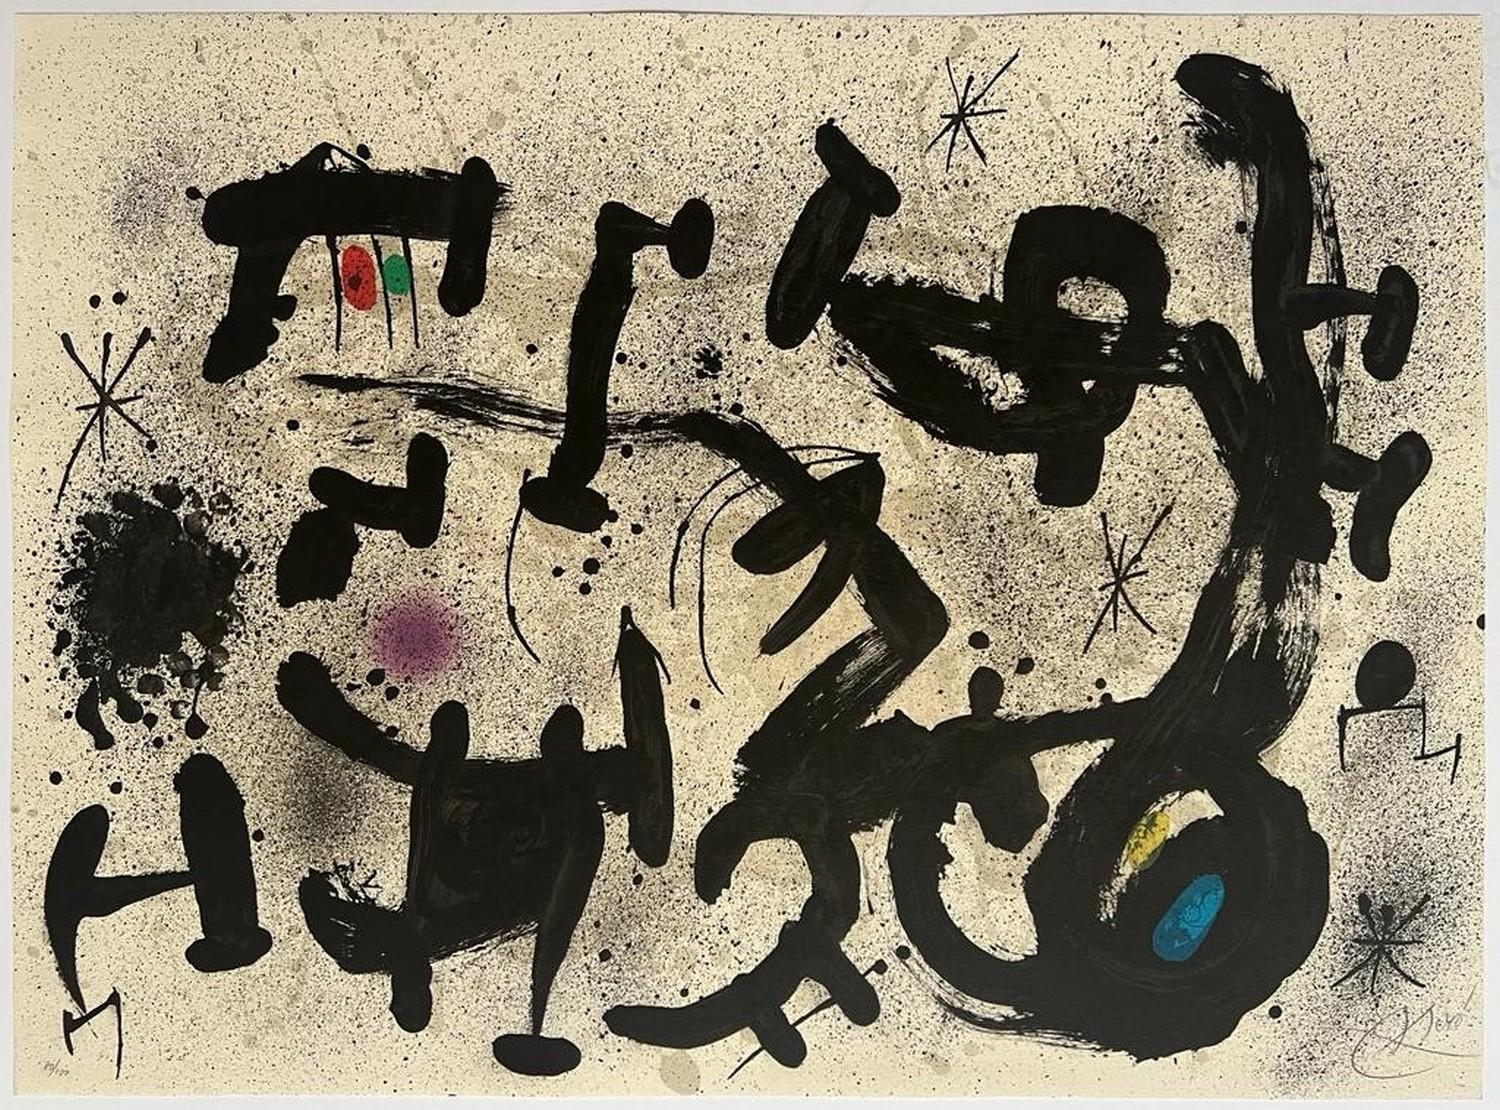 Homenatge a Joan Prats  - Print de Joan Miró